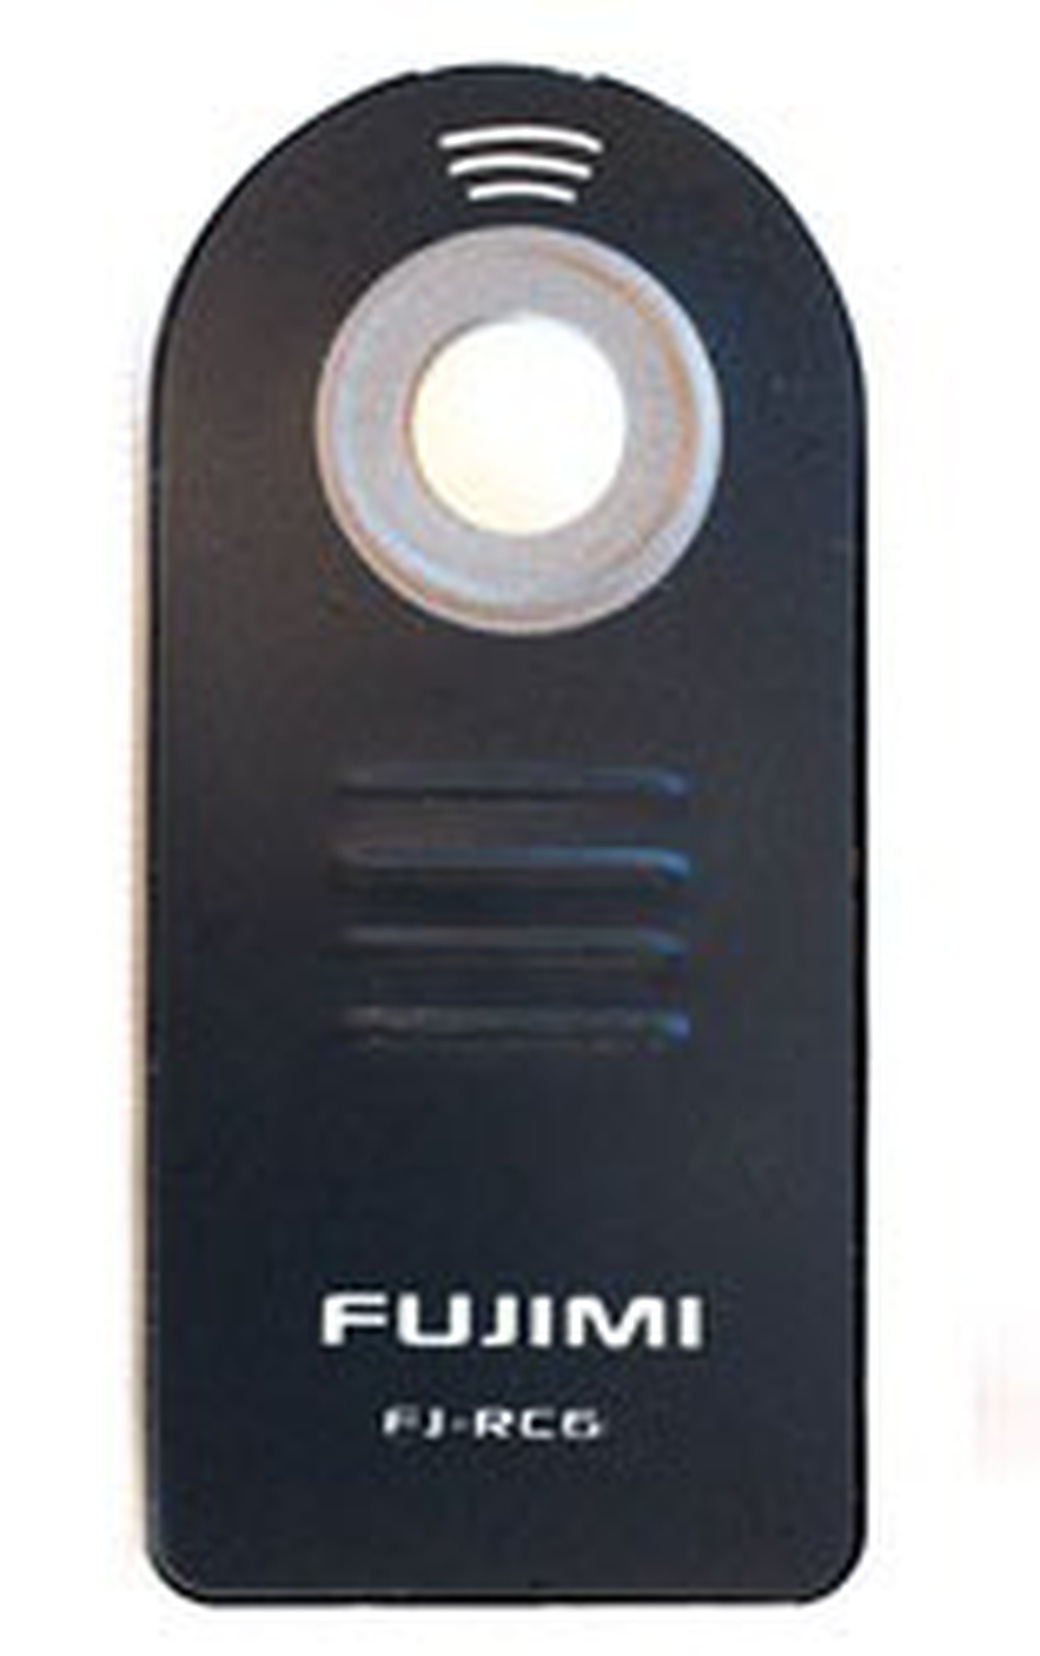 Пульт ДУ Fujimi FJ RC-6N для Nikon ИК фото